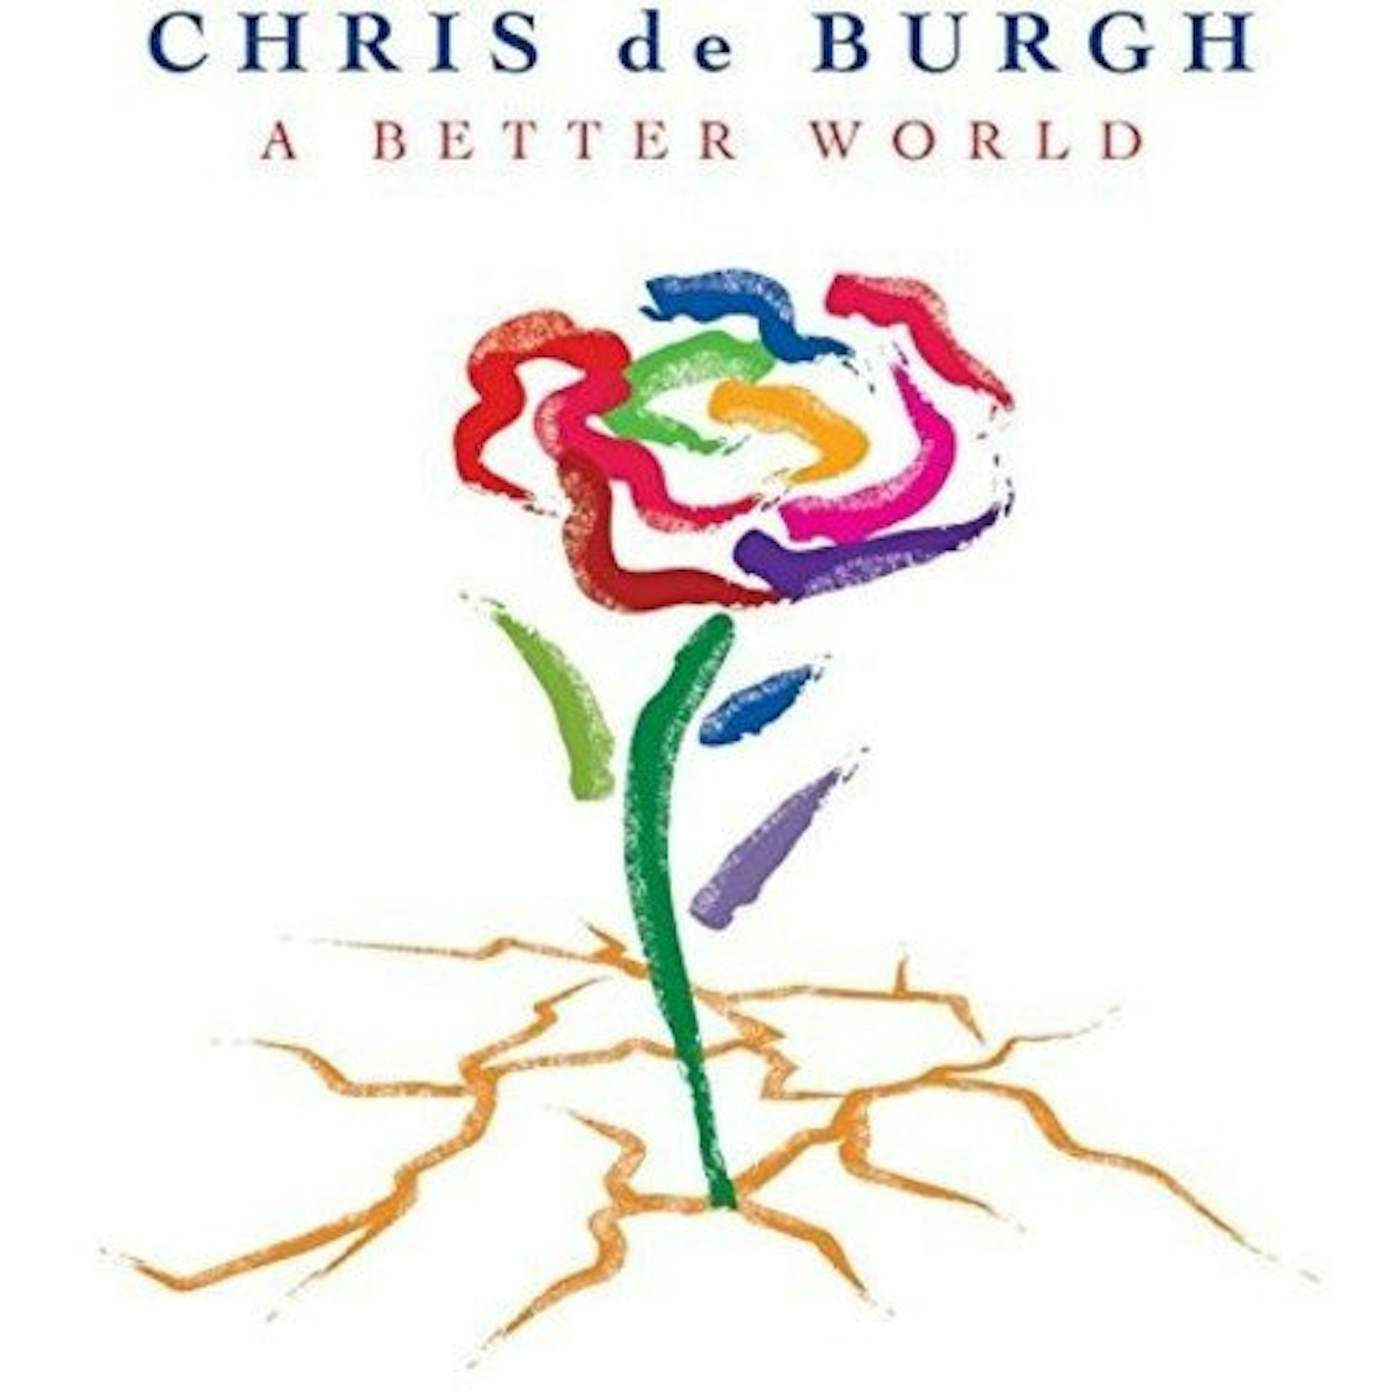 Chris de Burgh BETTER WORLD CD